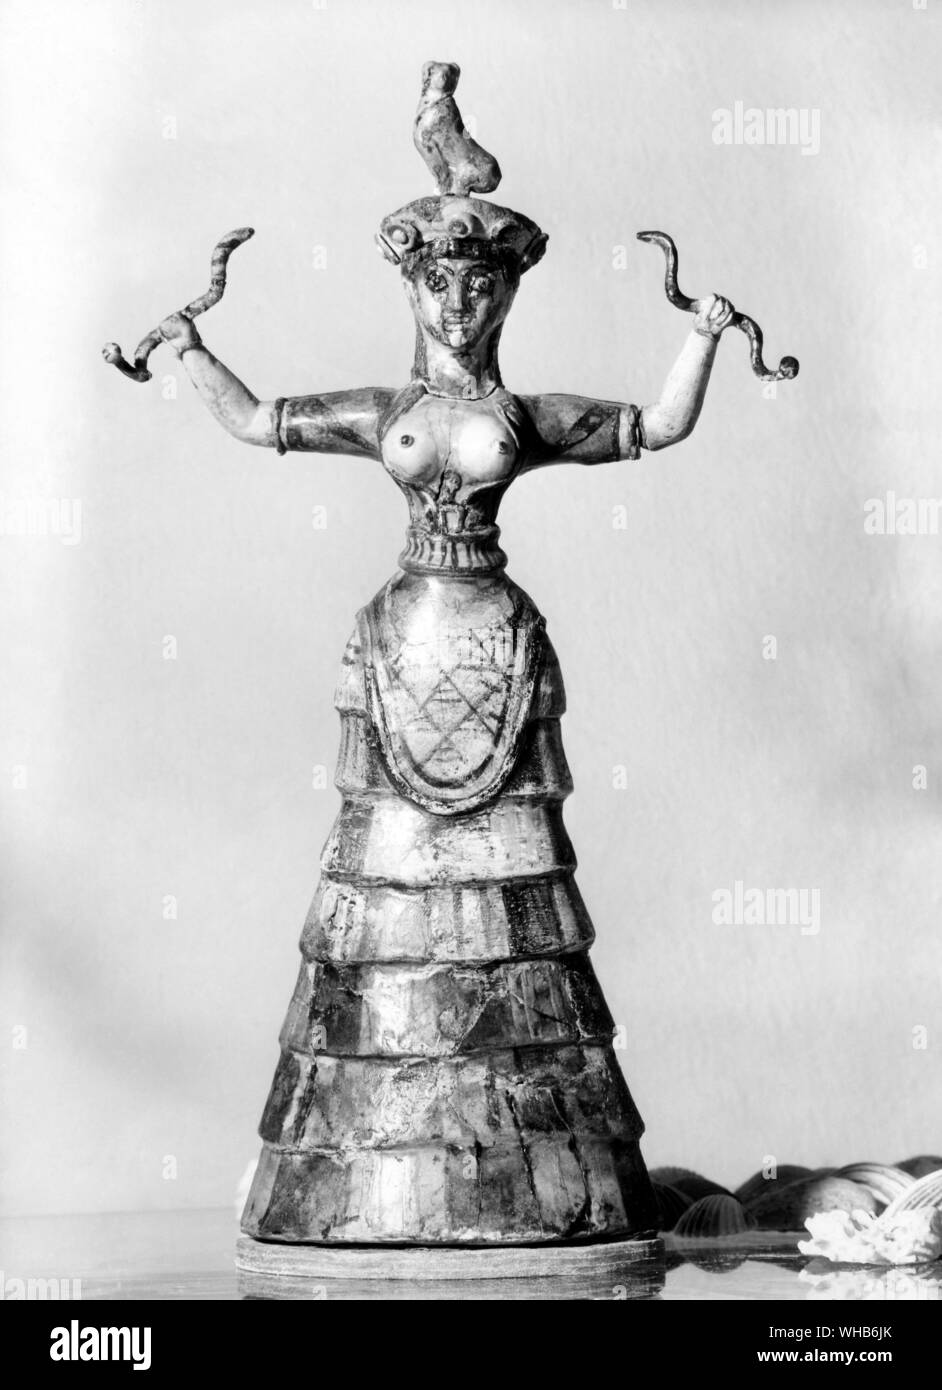 Schlange - Priesterin, oder eine Schlange - Göttin, aus dem Palast des Minos in Knossos, Kreta. Minoische Schlange Göttin figurine c 1600 BCE. Stockfoto